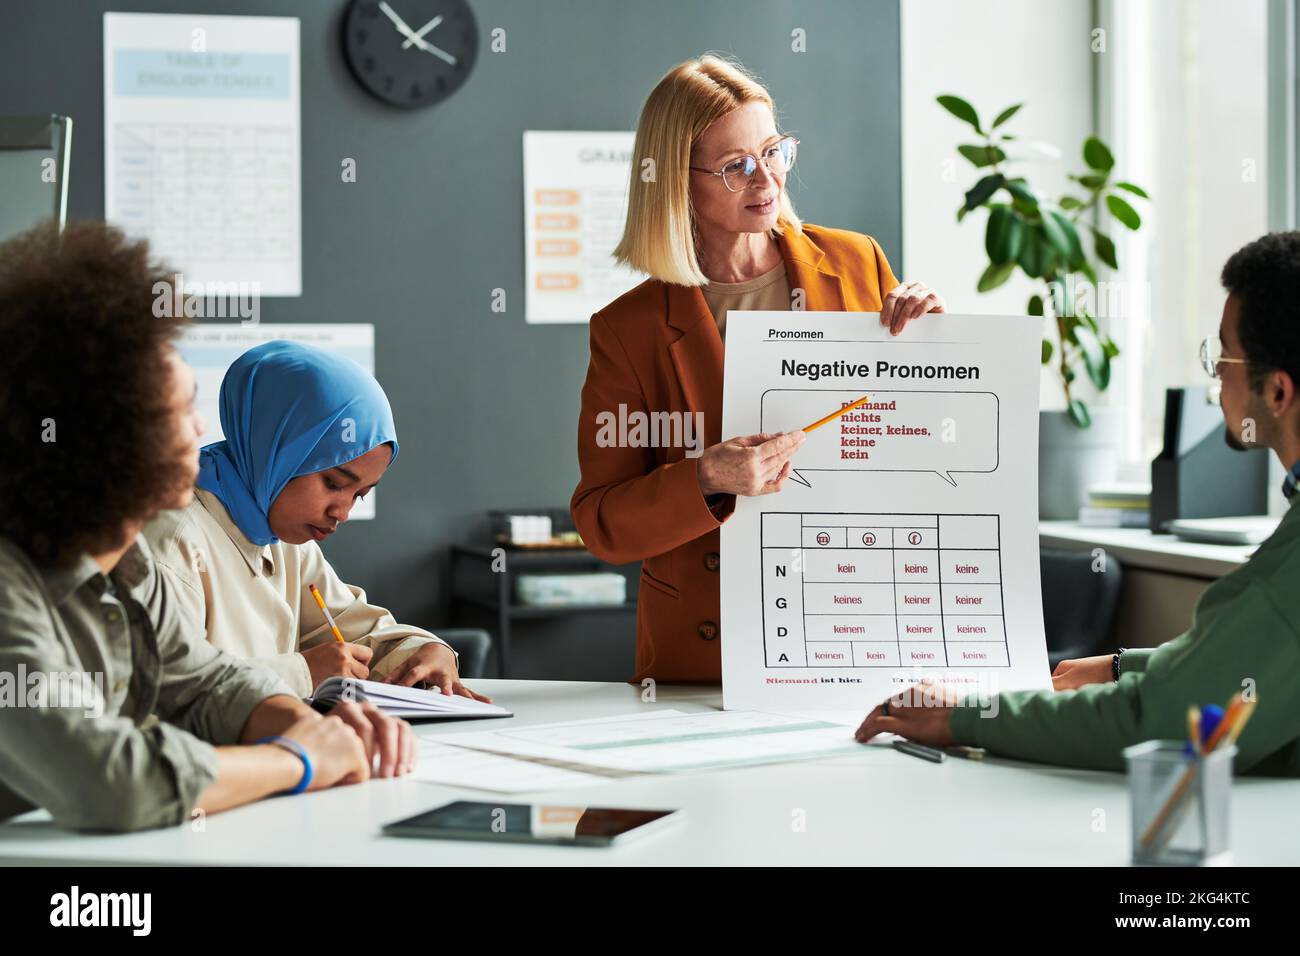 Selbstbewusster Lehrer der deutschen Sprache, der der Gruppe von Schülern negative Pronomen erklärt, während er während der Präsentation auf den Tisch zeigt Stockfoto